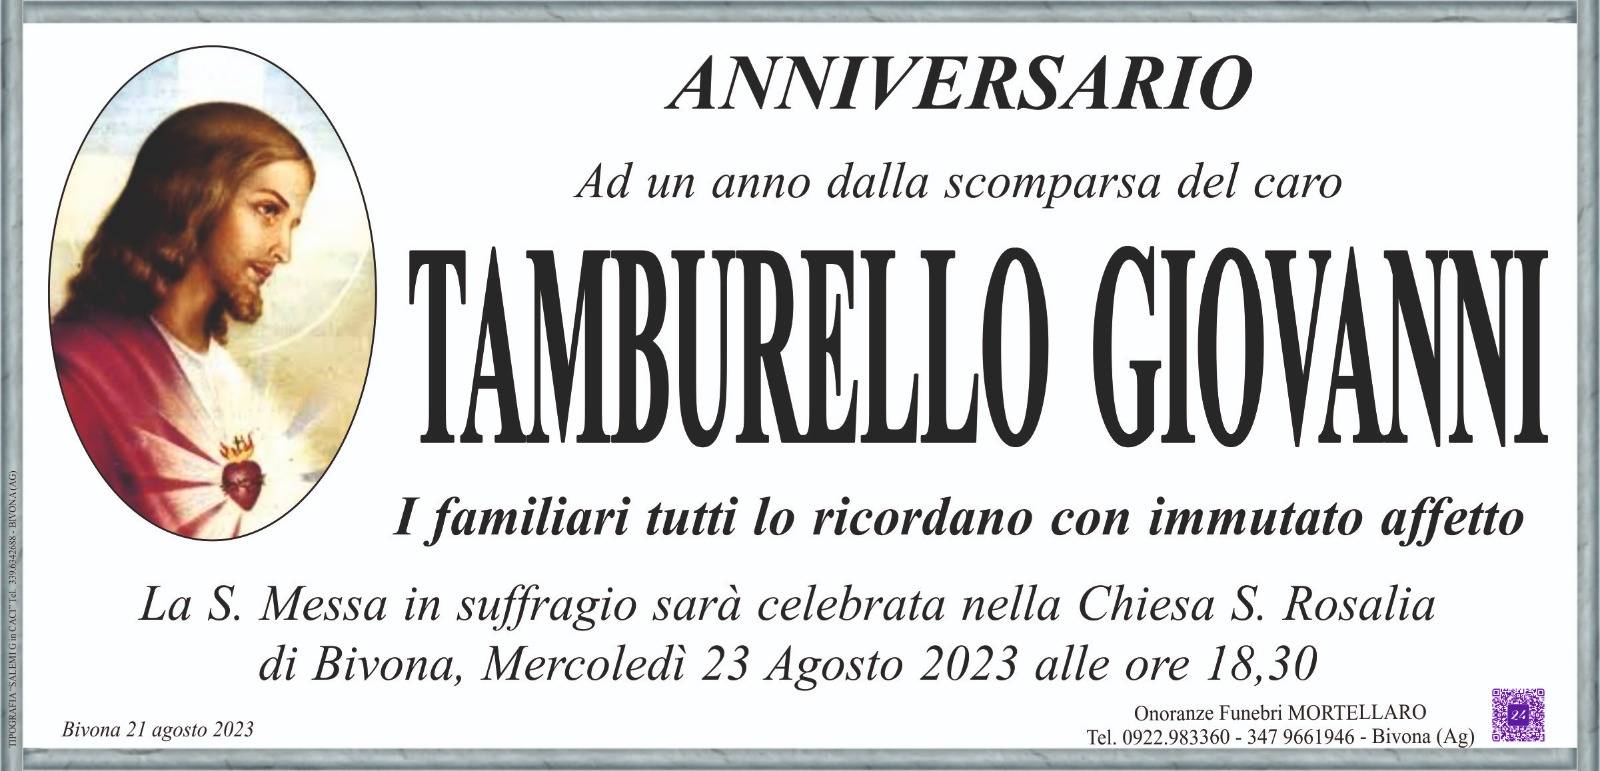 Giovanni Tamburello